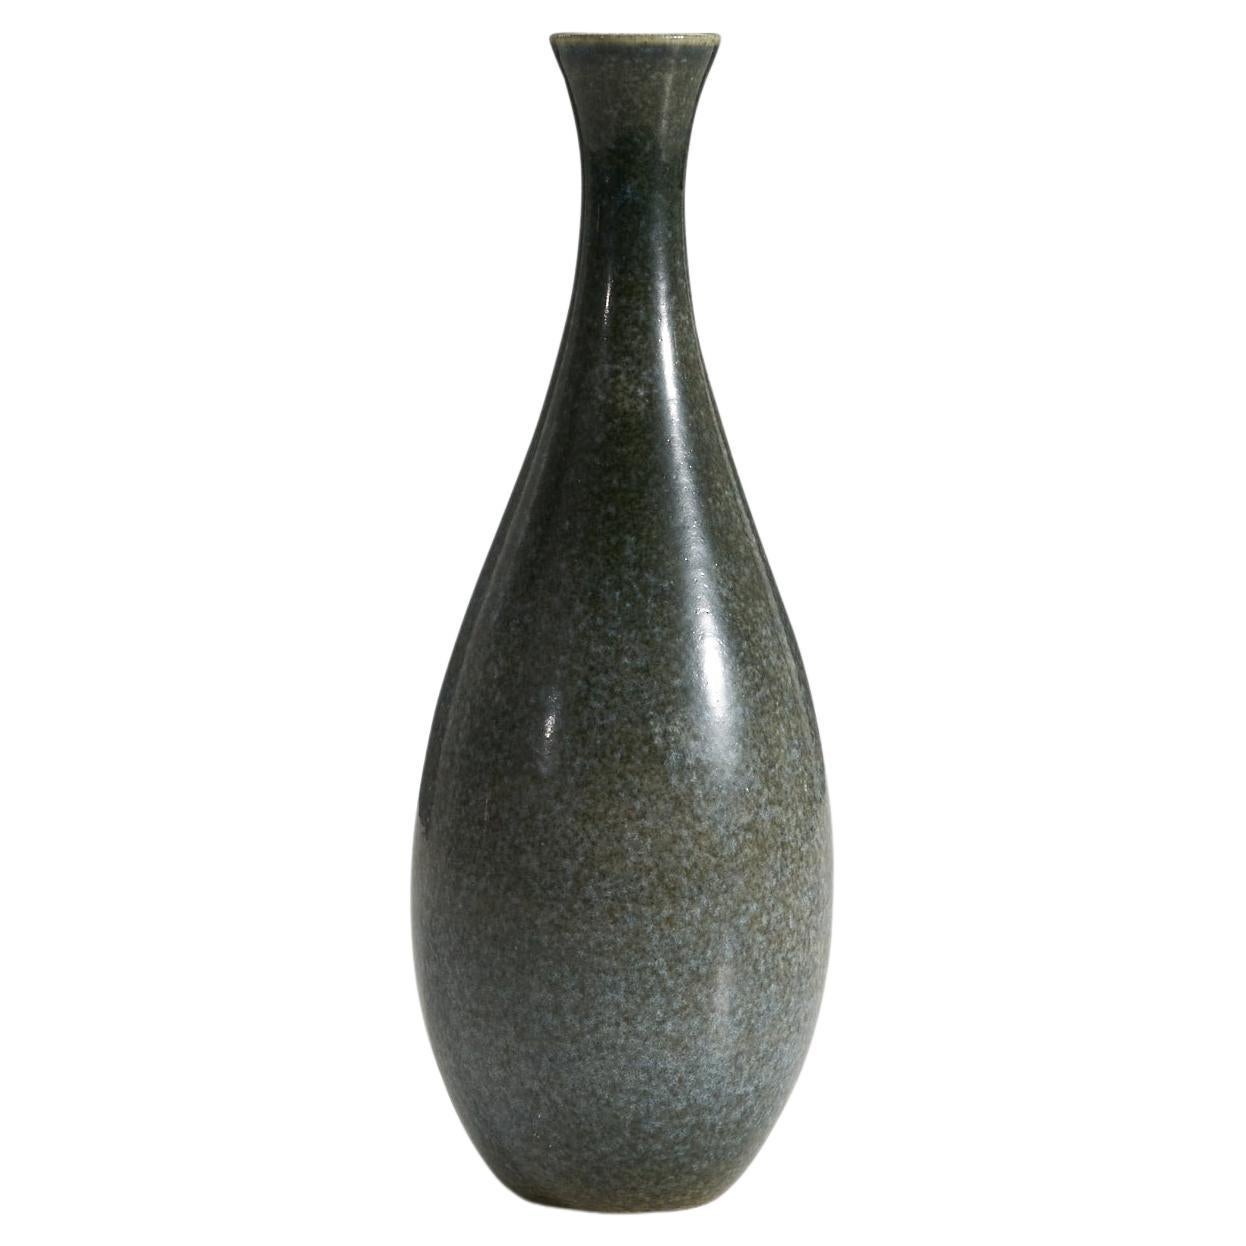 Höganas Keramik, Vase, Glazed Stoneware, Höganäs, Sweden, 1940s